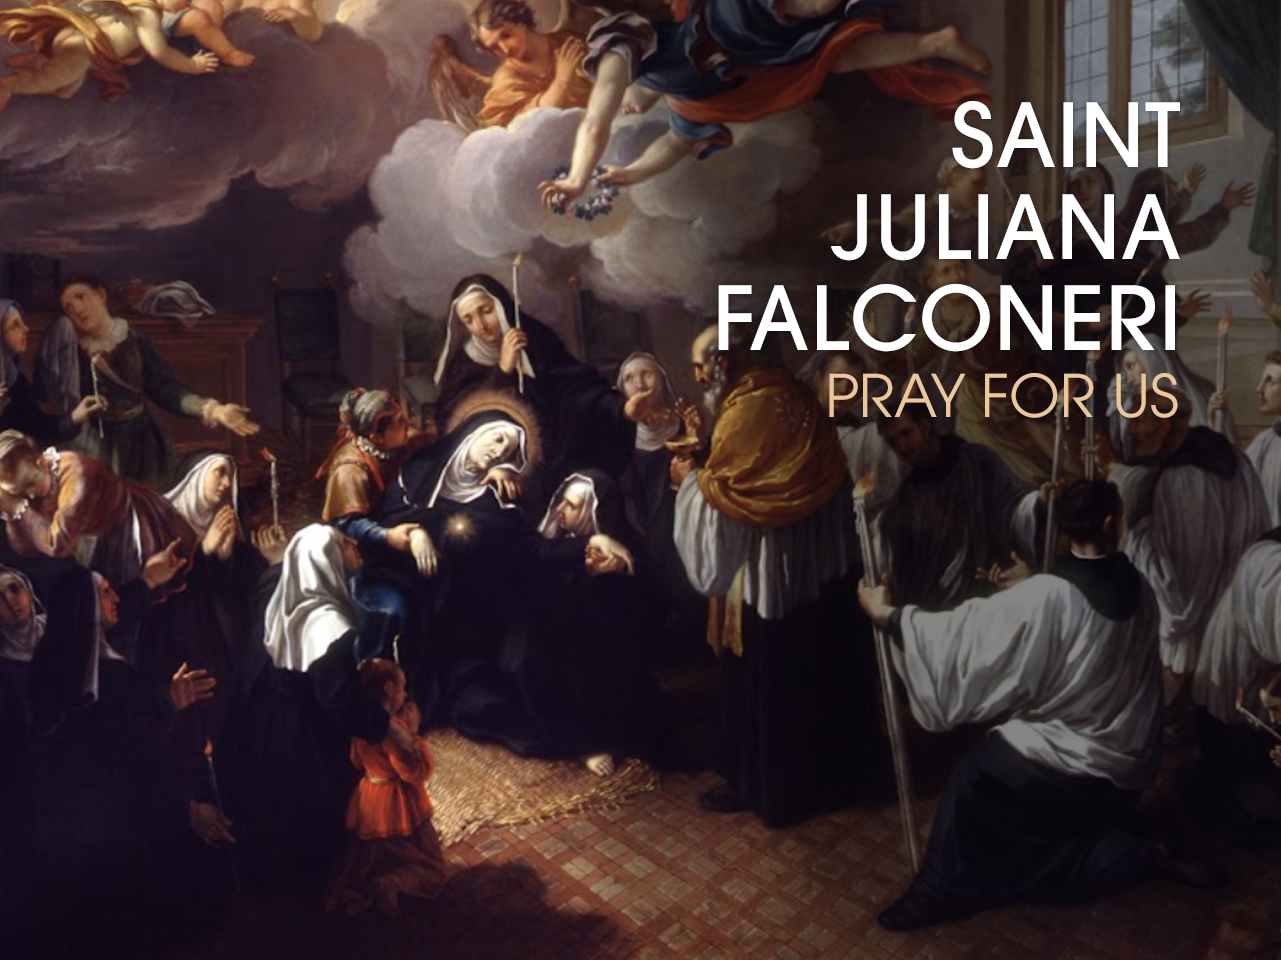 St. Juliana Falconeri